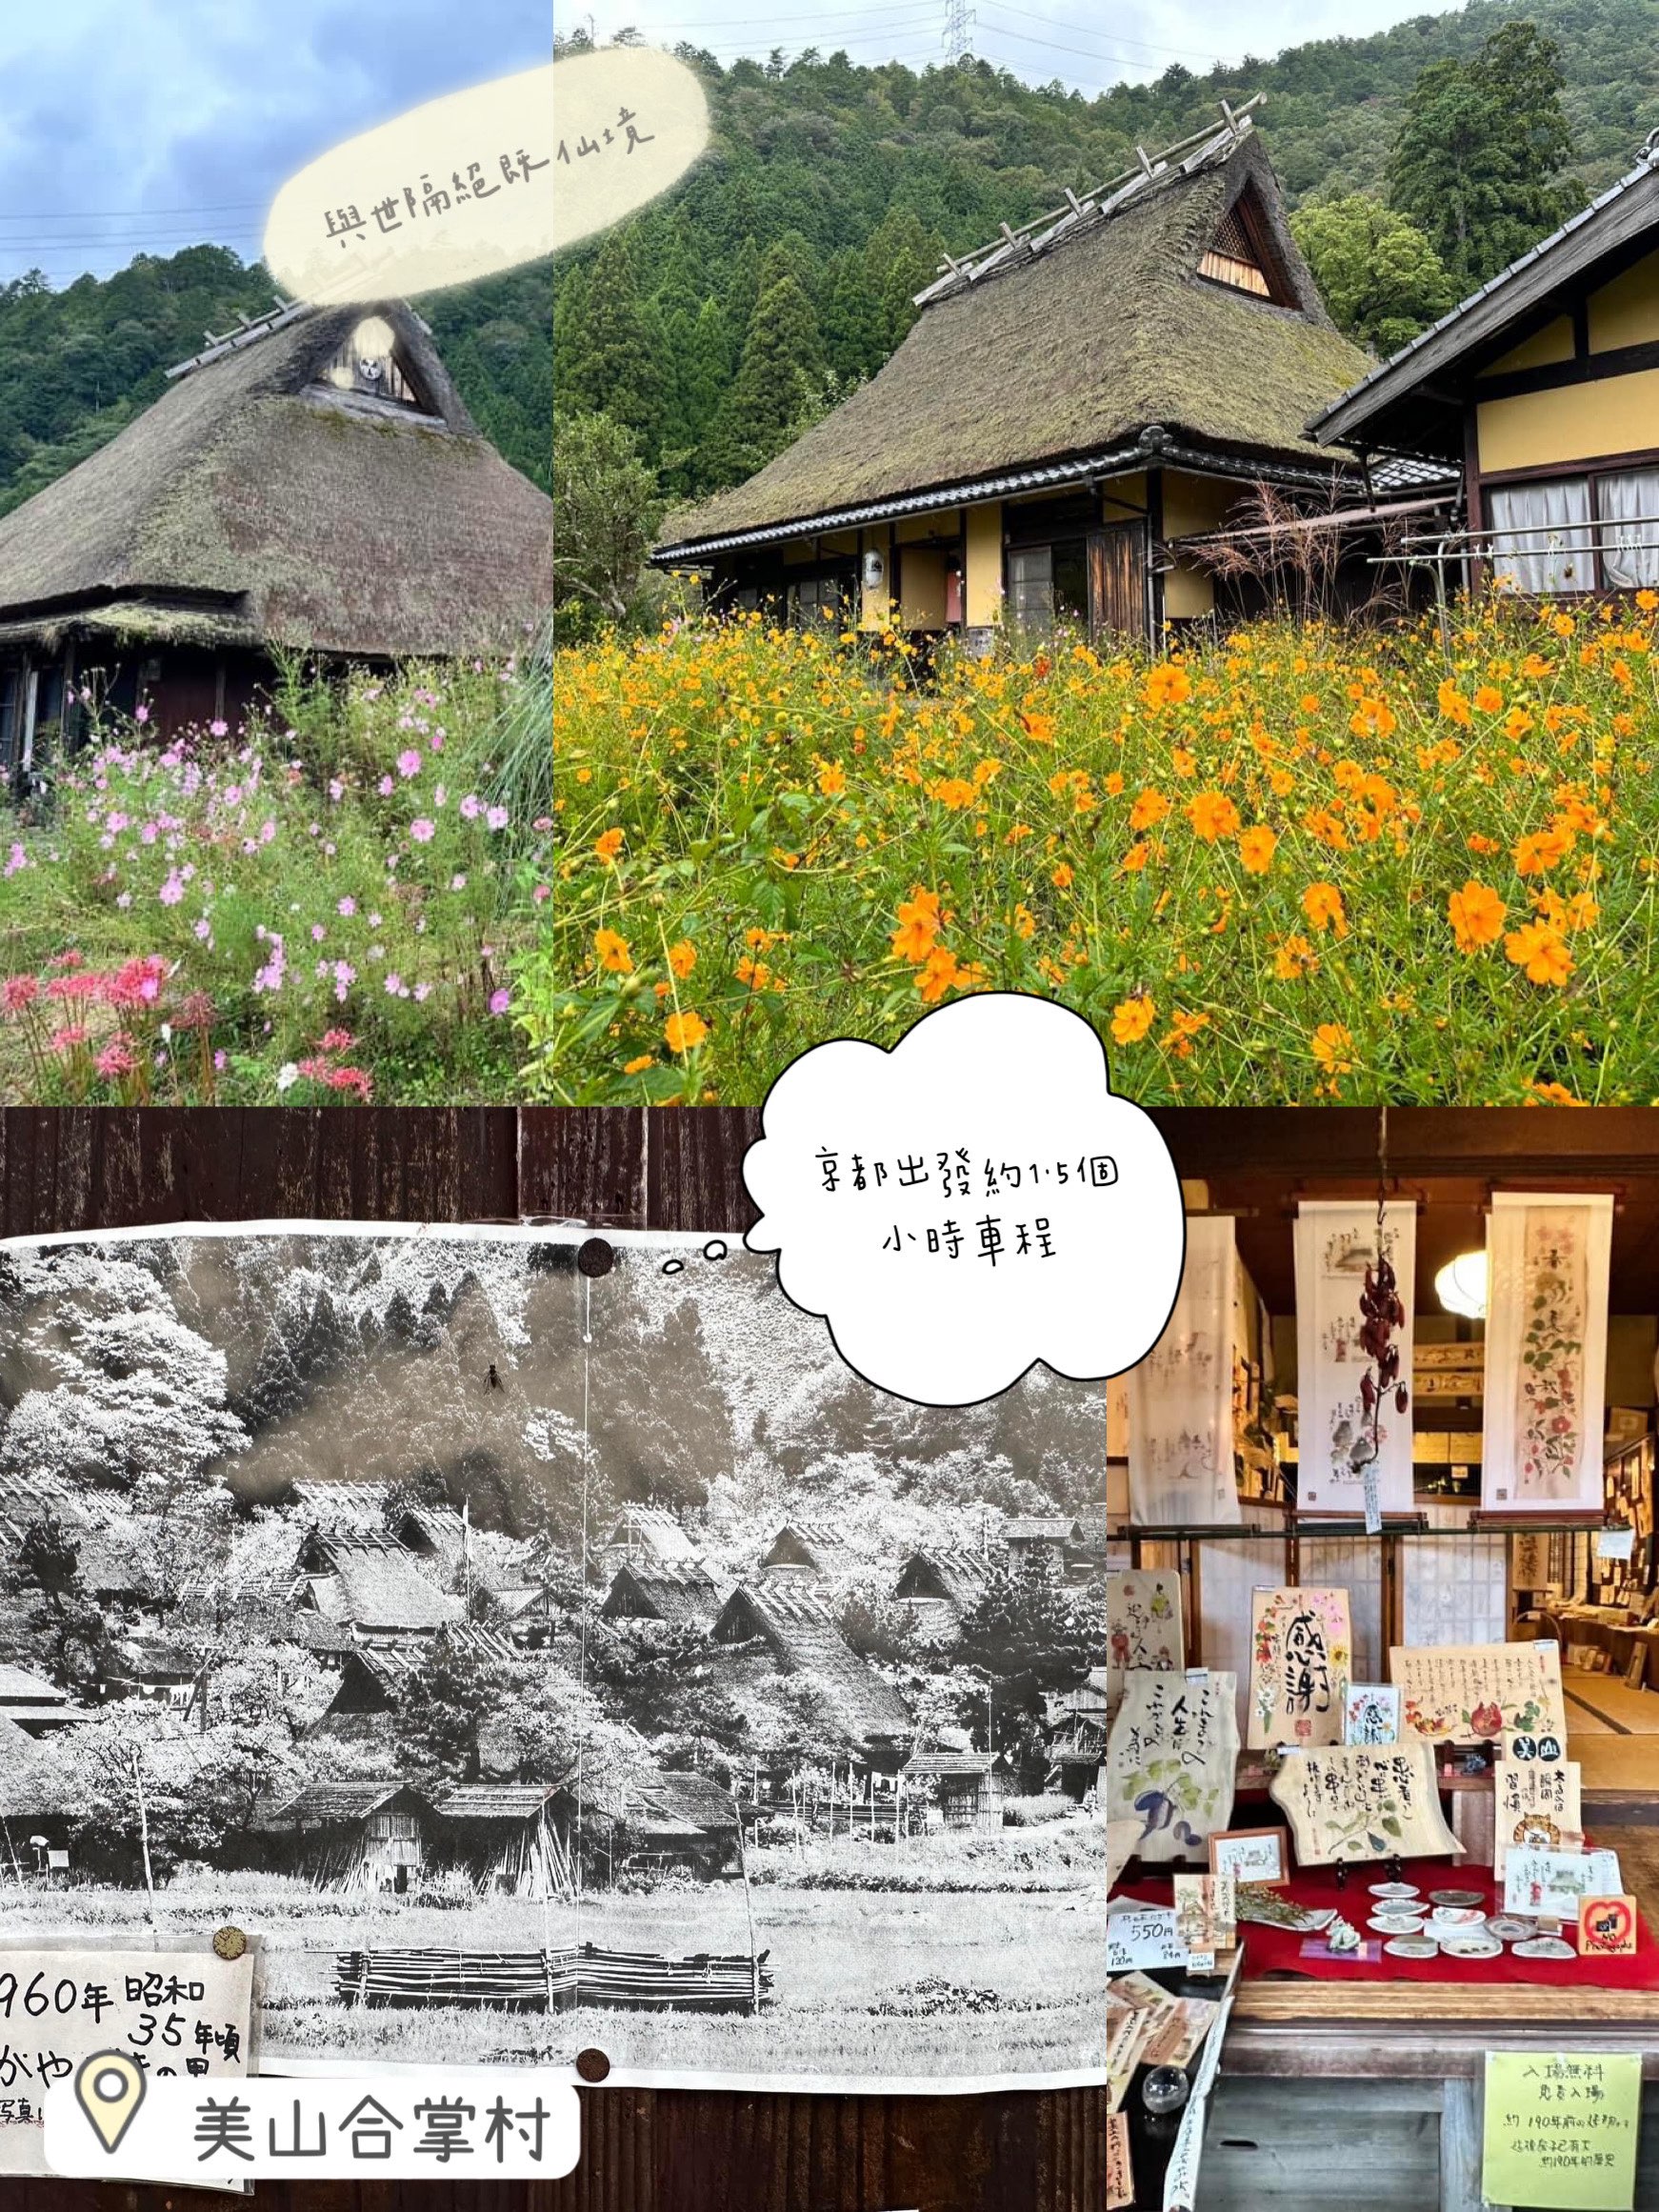 京都出发😛美山合掌村❤️经典茅葺屋😉仙境景点